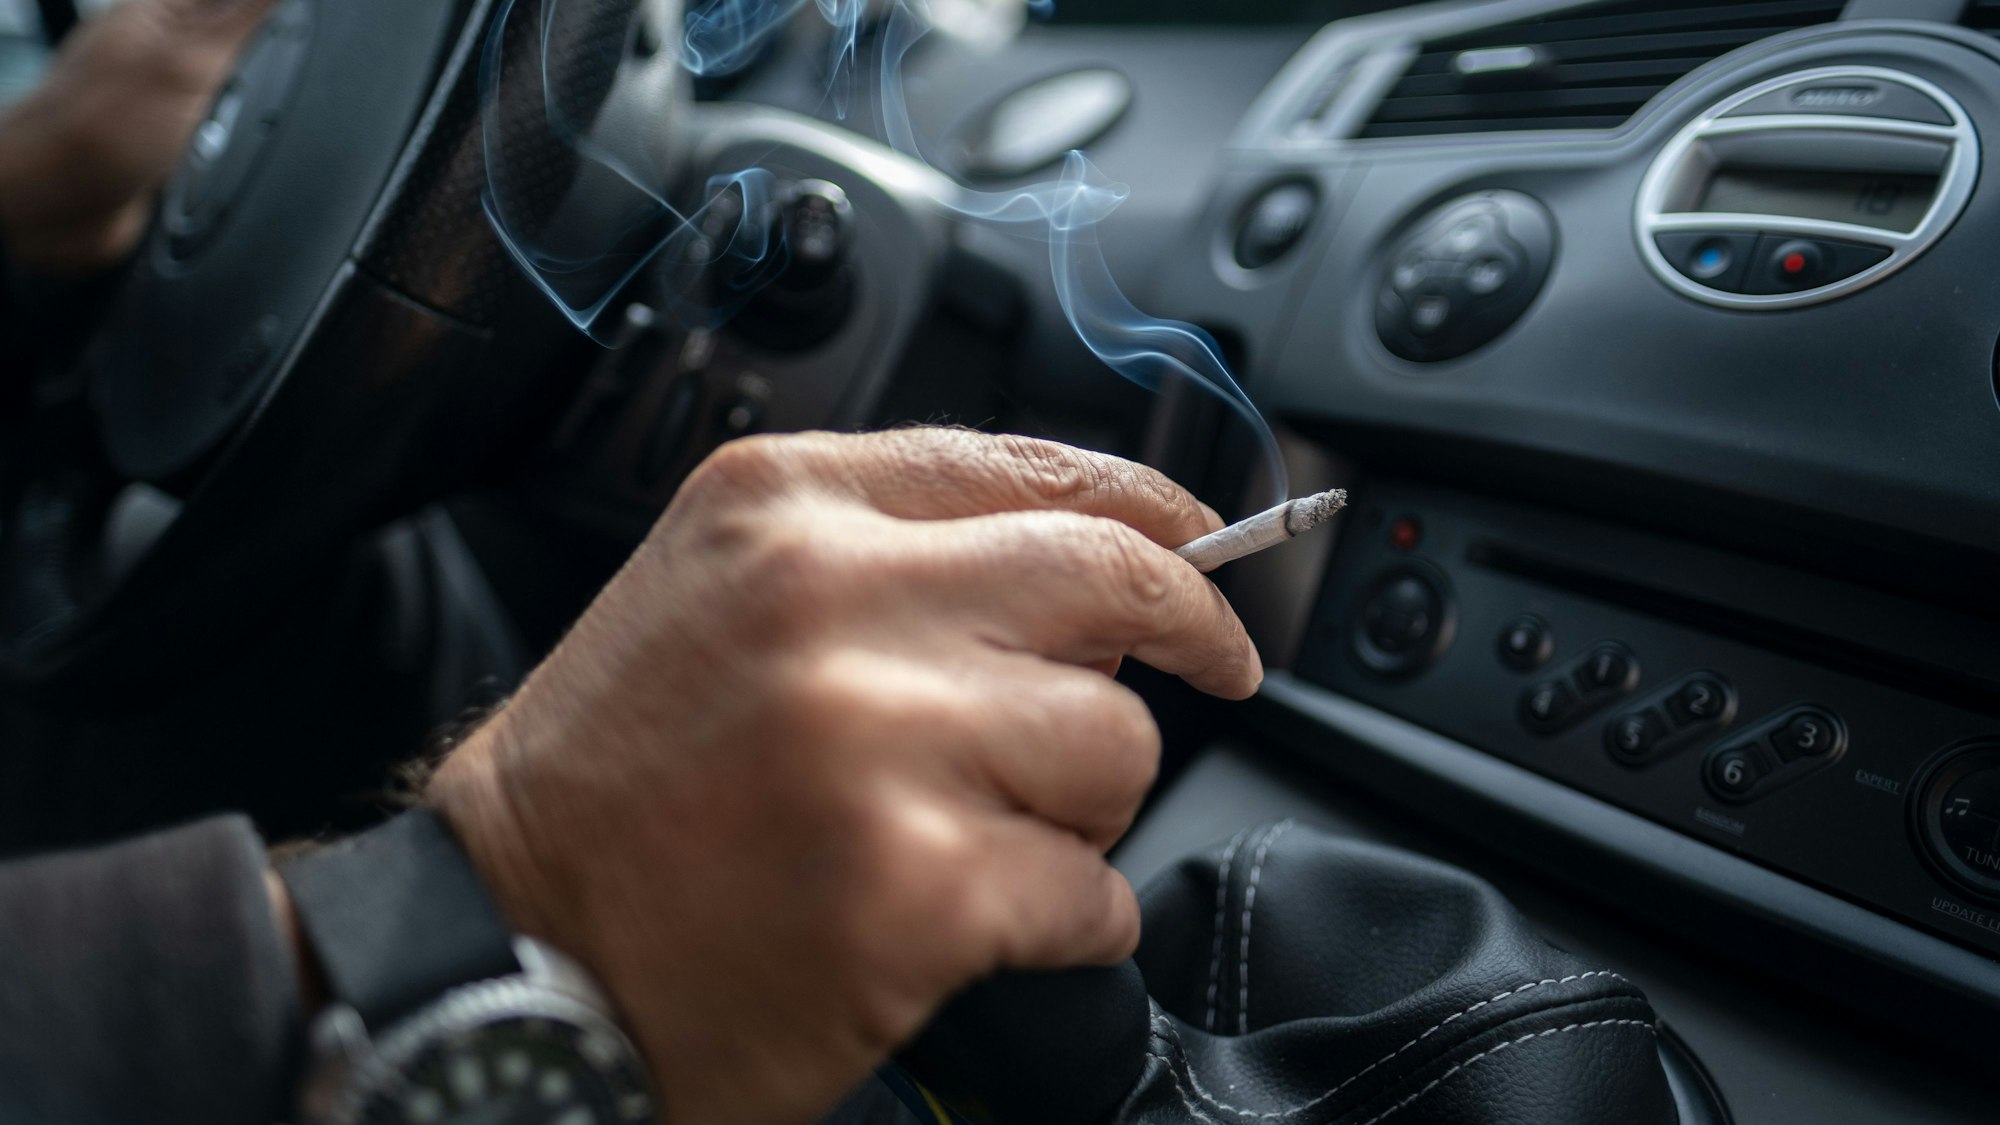 Ein Mann sitzt rauchend am Lenkrad eines Autos. Wer im Auto raucht, schadet allen Mitfahrern. Eine Initiative mehrerer Länder will vor allem Kinder und Jugendliche per Gesetz vor dem Qualm schützen.